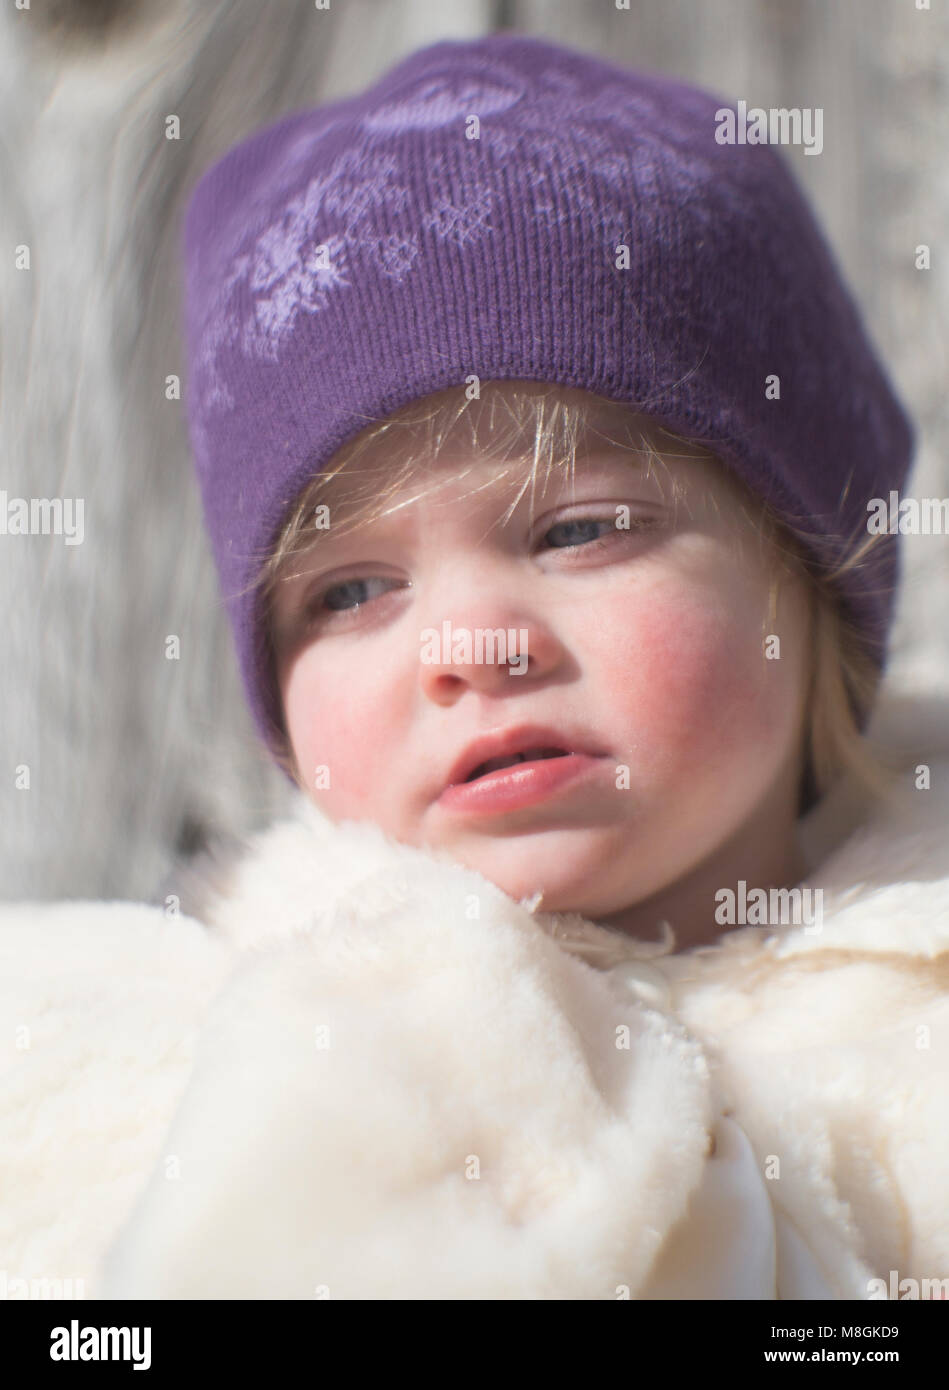 Portrait d'hiver en plein air candide d'une petite fille aux cheveux blonds, des yeux bleus et des joues roses, portant une veste blanche et d'une chaussette mauve pac. Banque D'Images